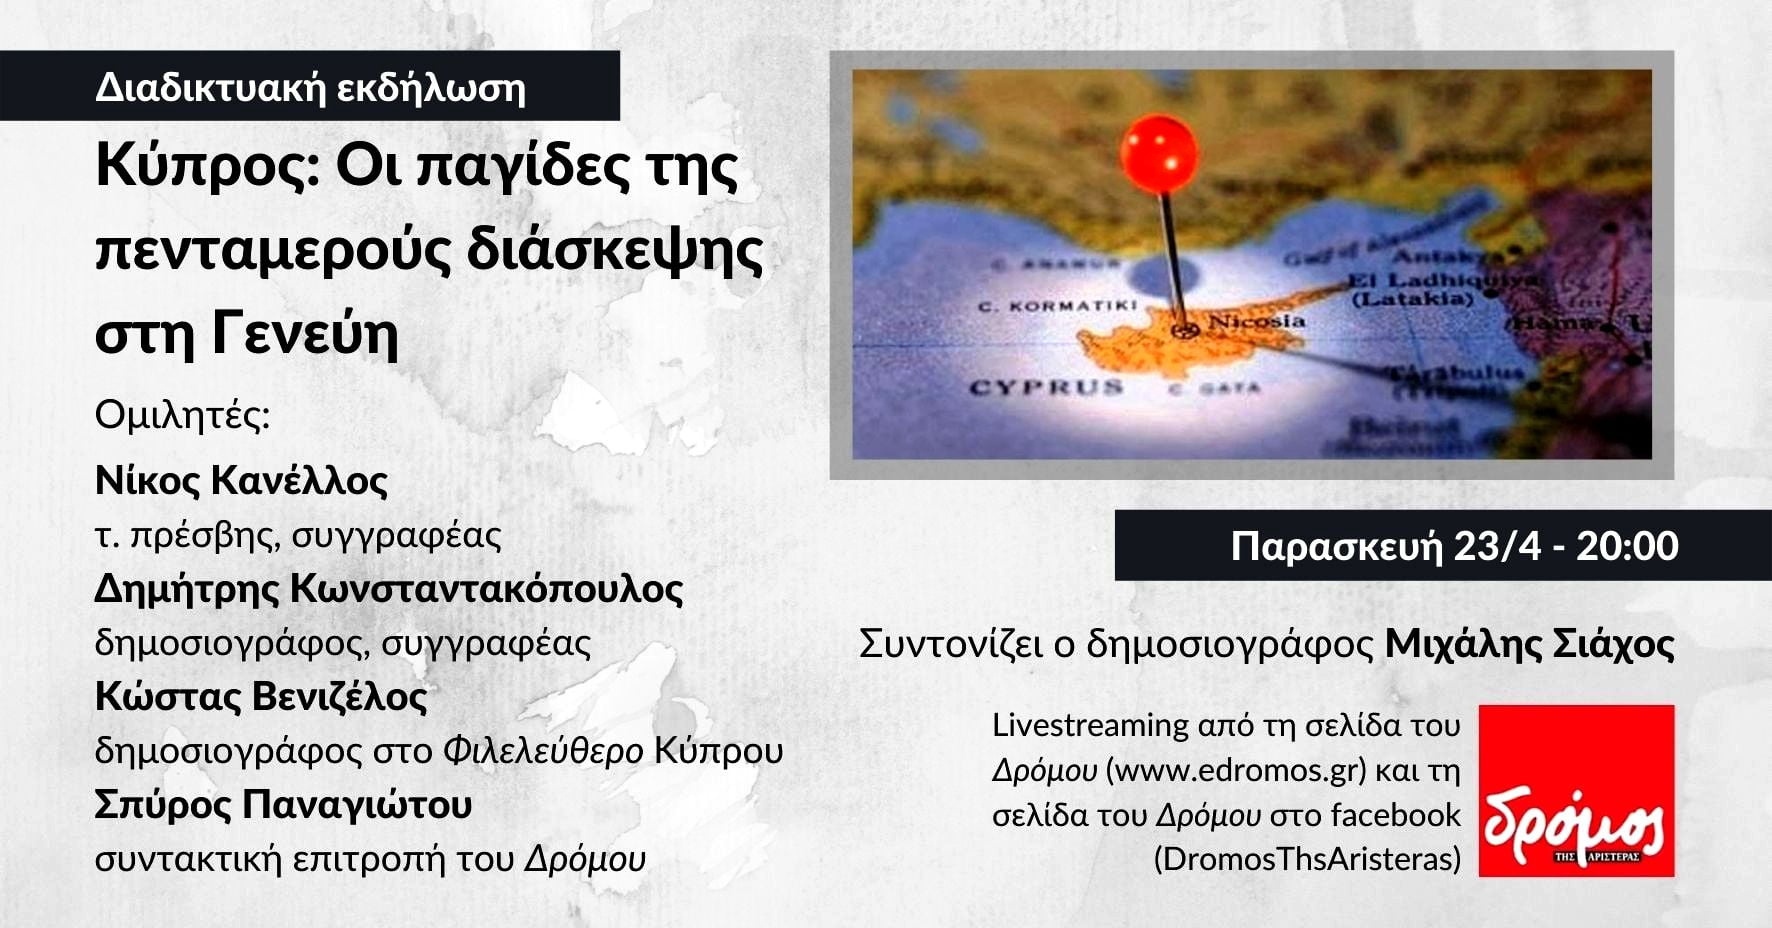 Διαδικτυακή εκδήλωση |  Παρασκευή 23/4, 20:00 “Κύπρος: Οι παγίδες της πενταμερούς διάσκεψης στη Γενεύη”